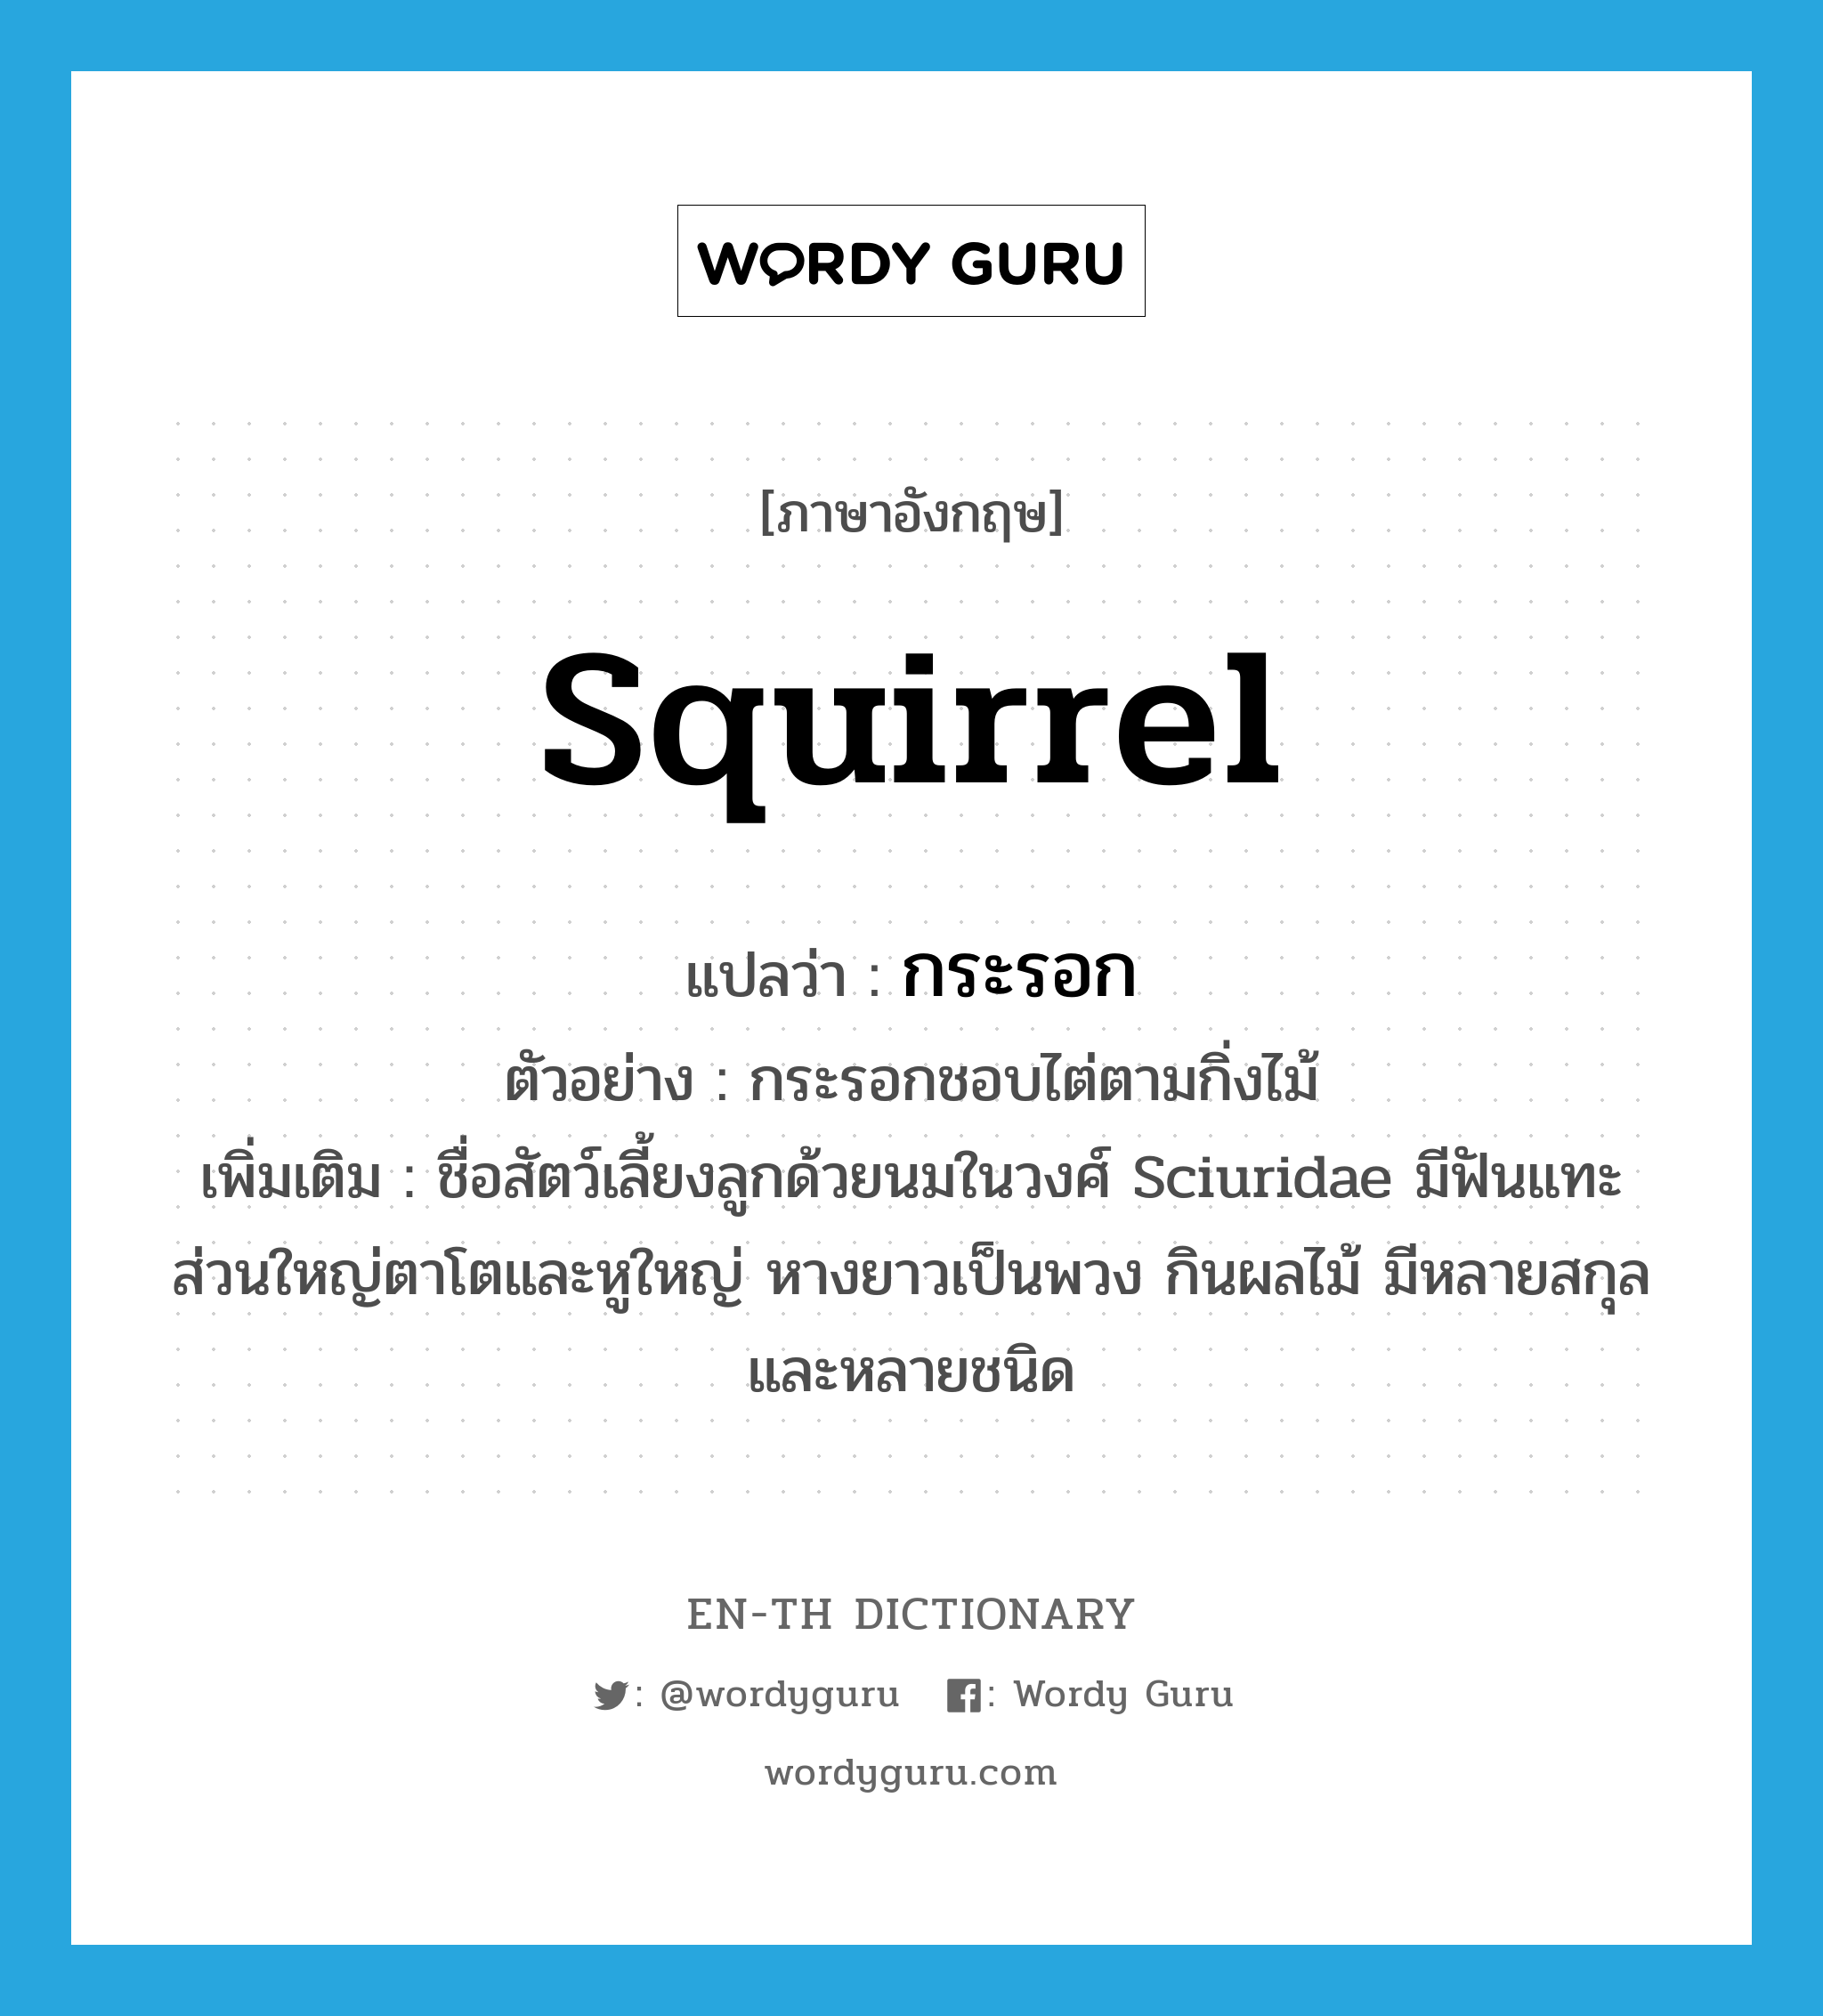 กระรอก ภาษาอังกฤษ?, คำศัพท์ภาษาอังกฤษ กระรอก แปลว่า squirrel ประเภท N ตัวอย่าง กระรอกชอบไต่ตามกิ่งไม้ เพิ่มเติม ชื่อสัตว์เลี้ยงลูกด้วยนมในวงศ์ Sciuridae มีฟันแทะ ส่วนใหญ่ตาโตและหูใหญ่ หางยาวเป็นพวง กินผลไม้ มีหลายสกุลและหลายชนิด หมวด N